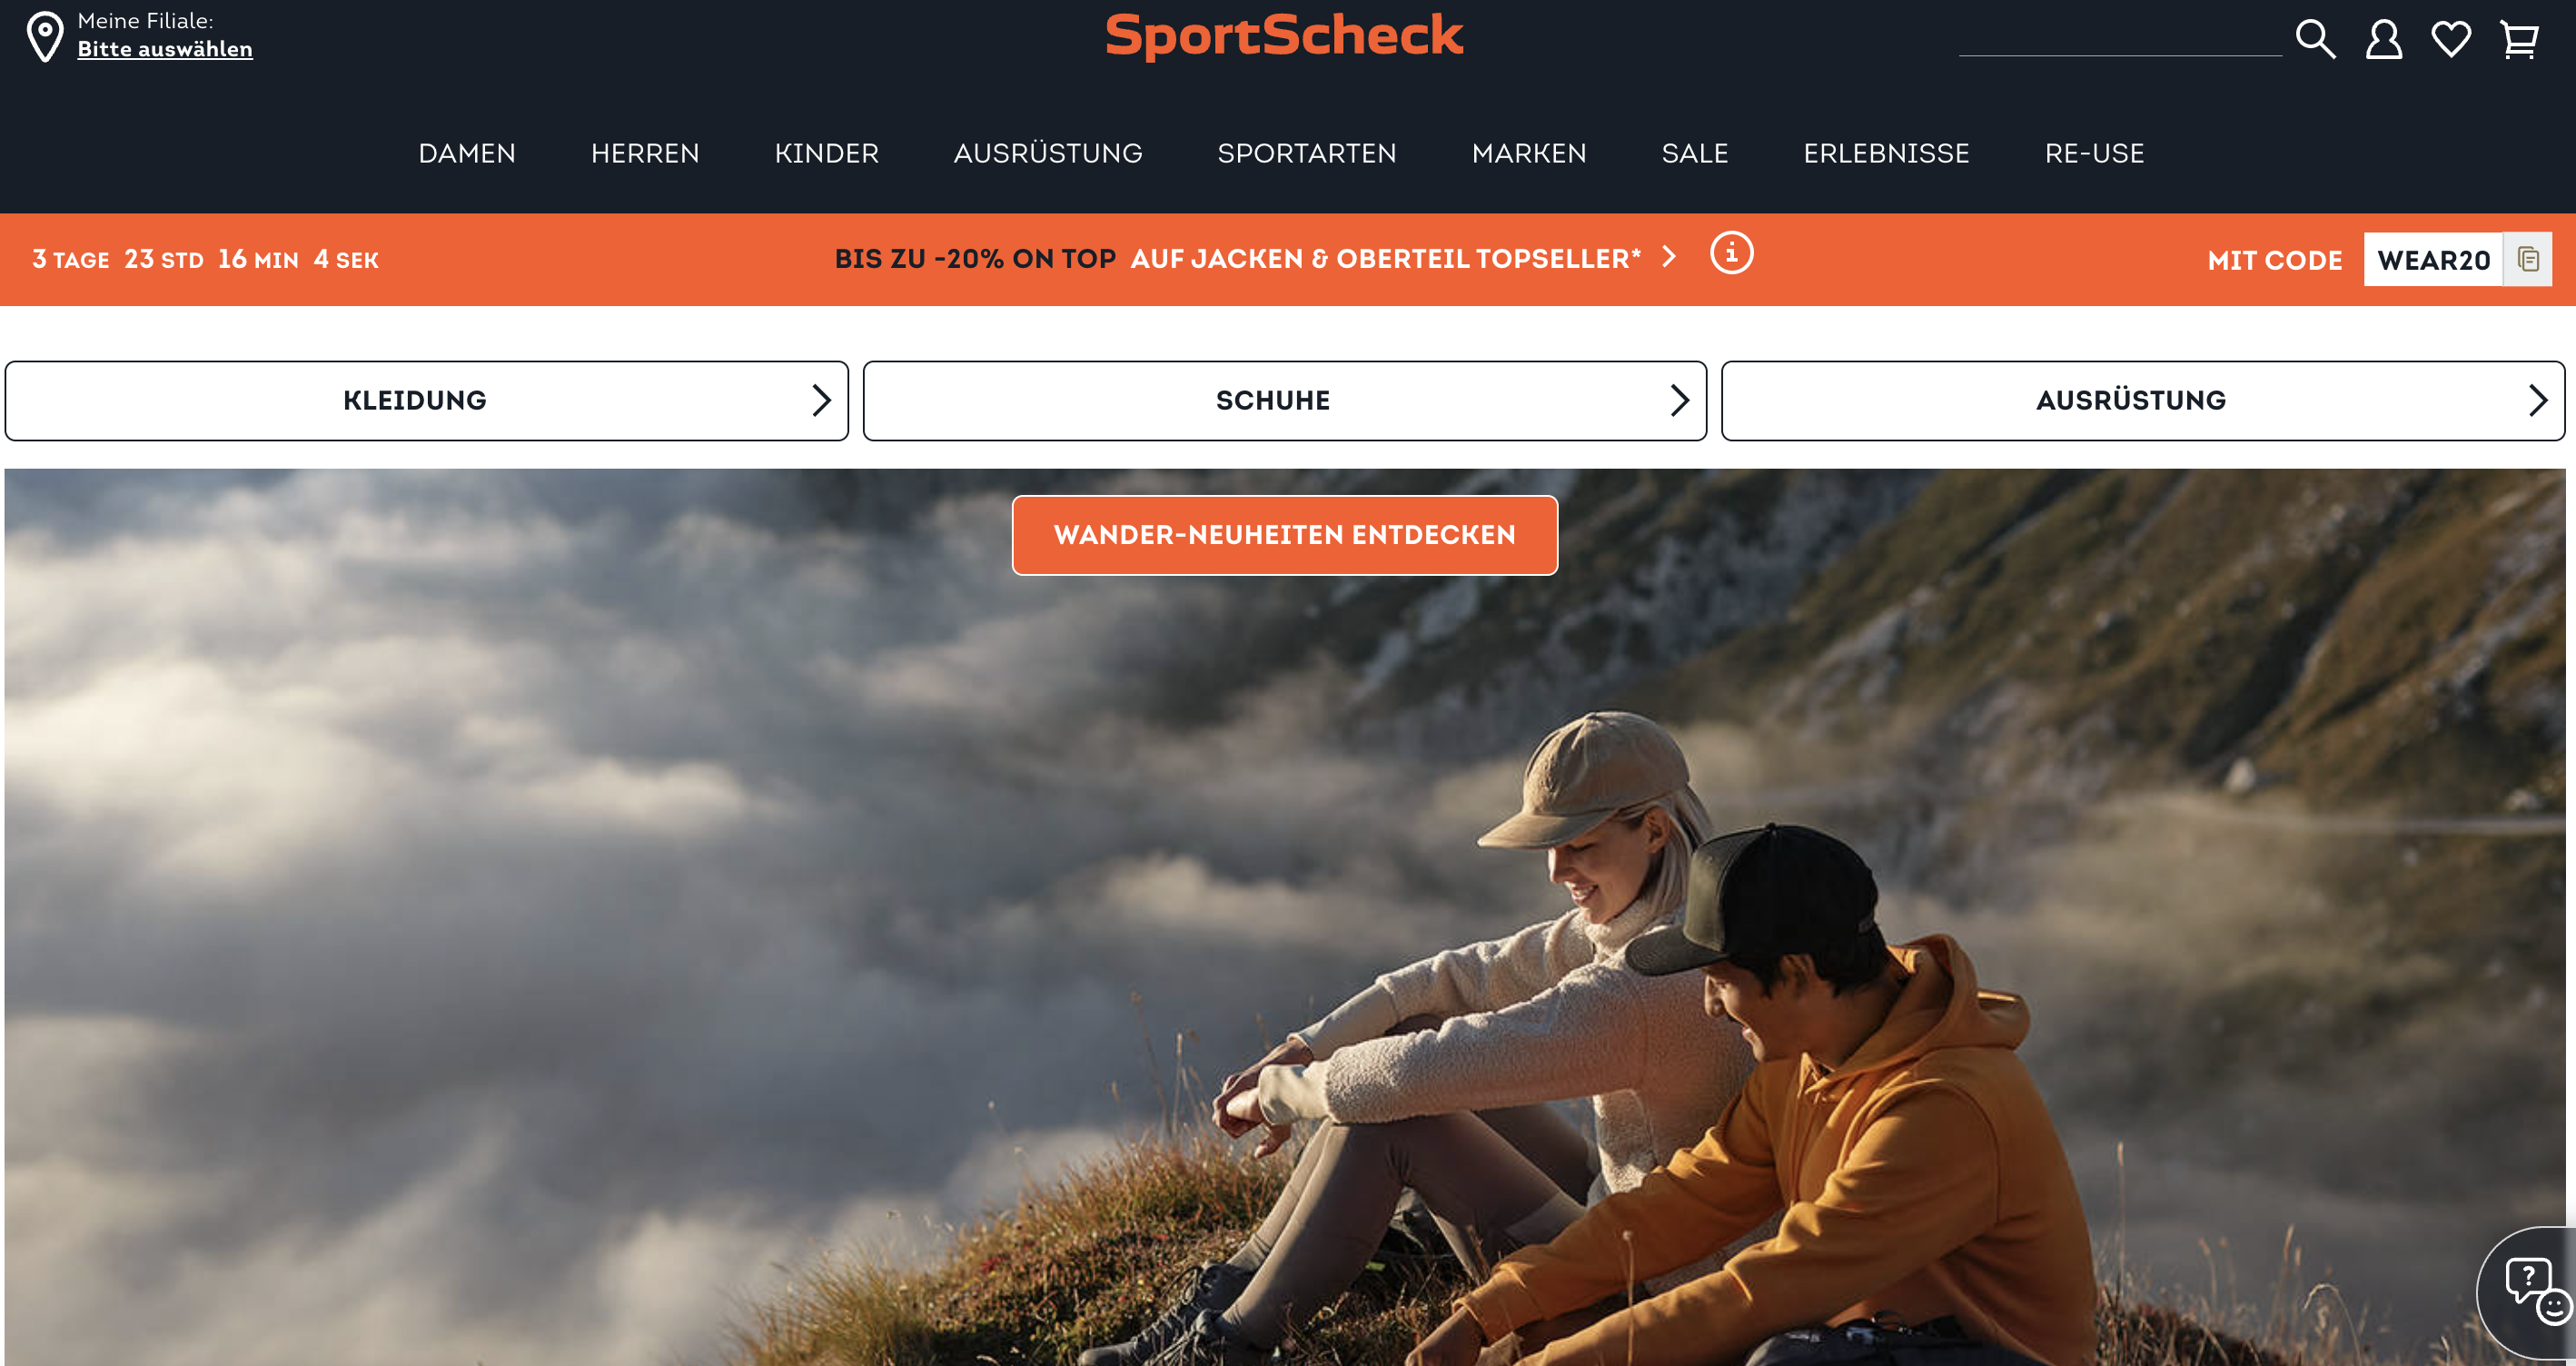 英国时尚零售集团 Frasers Group 收购德国体育零售商 SportScheck